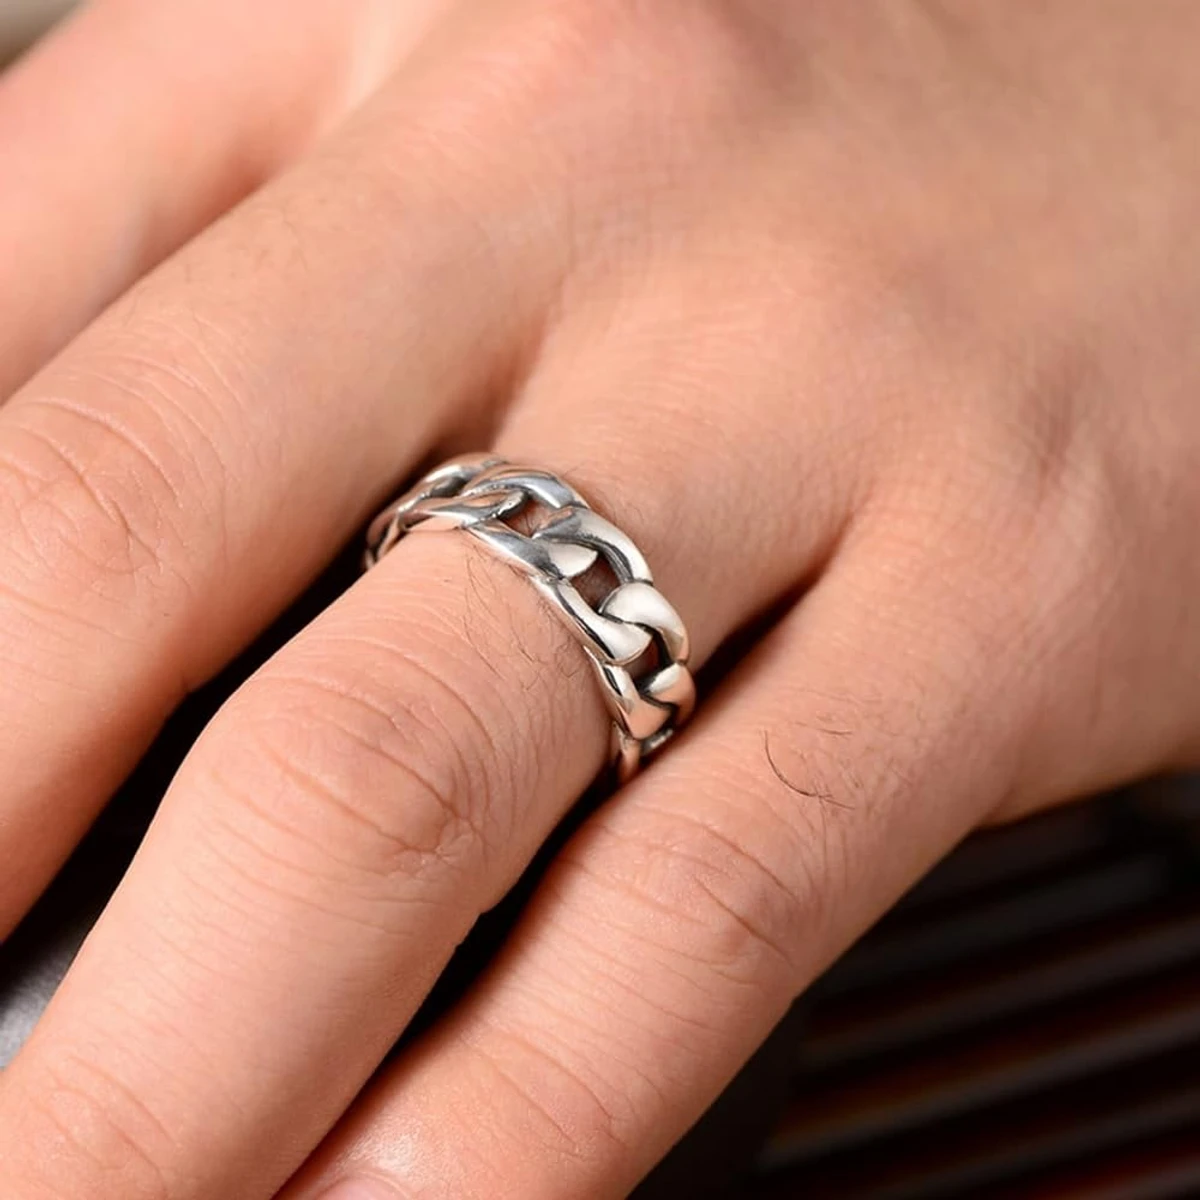 Fashionable New Stainless Steel Finger Ring For Men